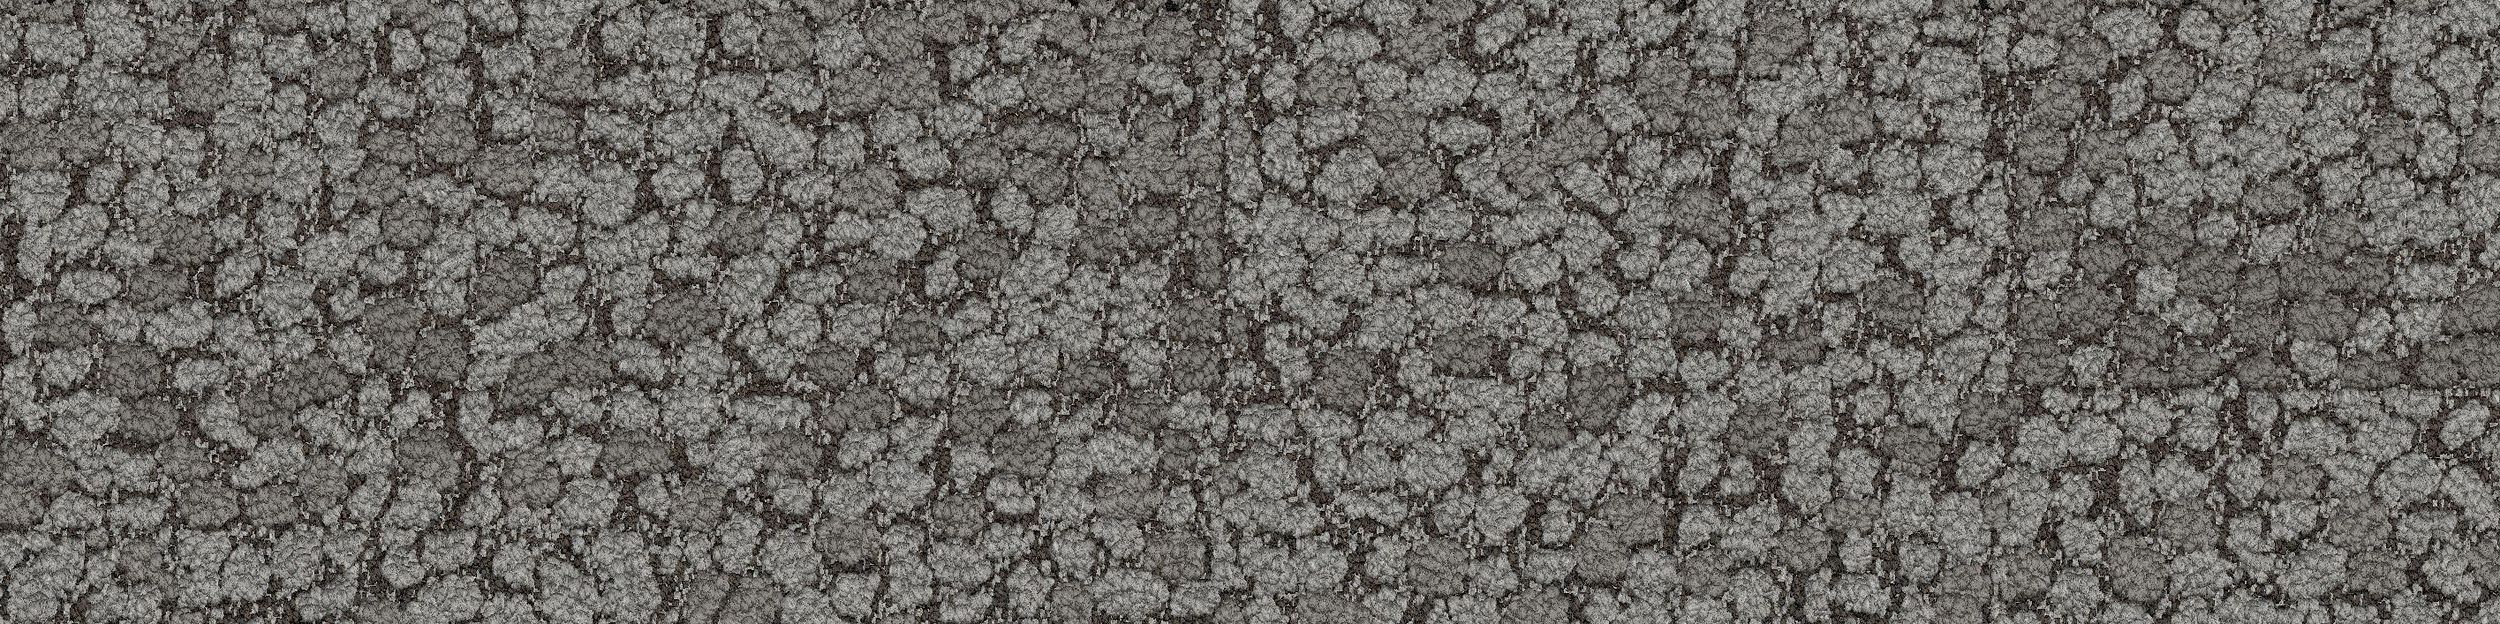 HN840 Carpet Tile In Nickel Bildnummer 2